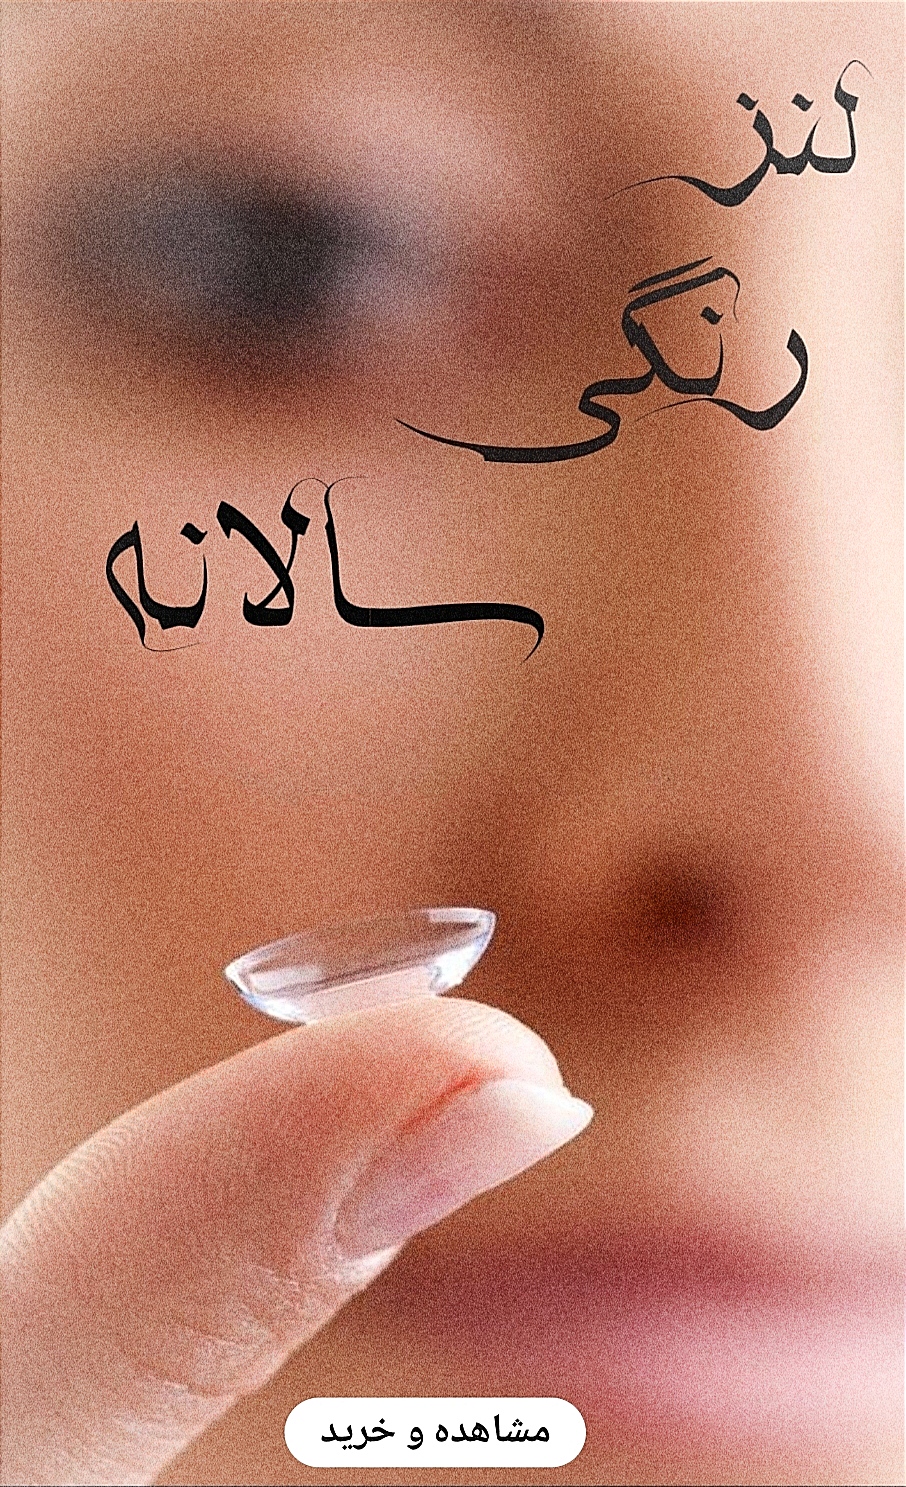 خرید آنلاین انواع لنز چشم اصلی و اورجینال-لنز یکساله هرا-فروشگاه اینترنتی آرایشی و بهداشتی آزارو در شیراز-فروش ویژه-به همراه لیست قیمت 